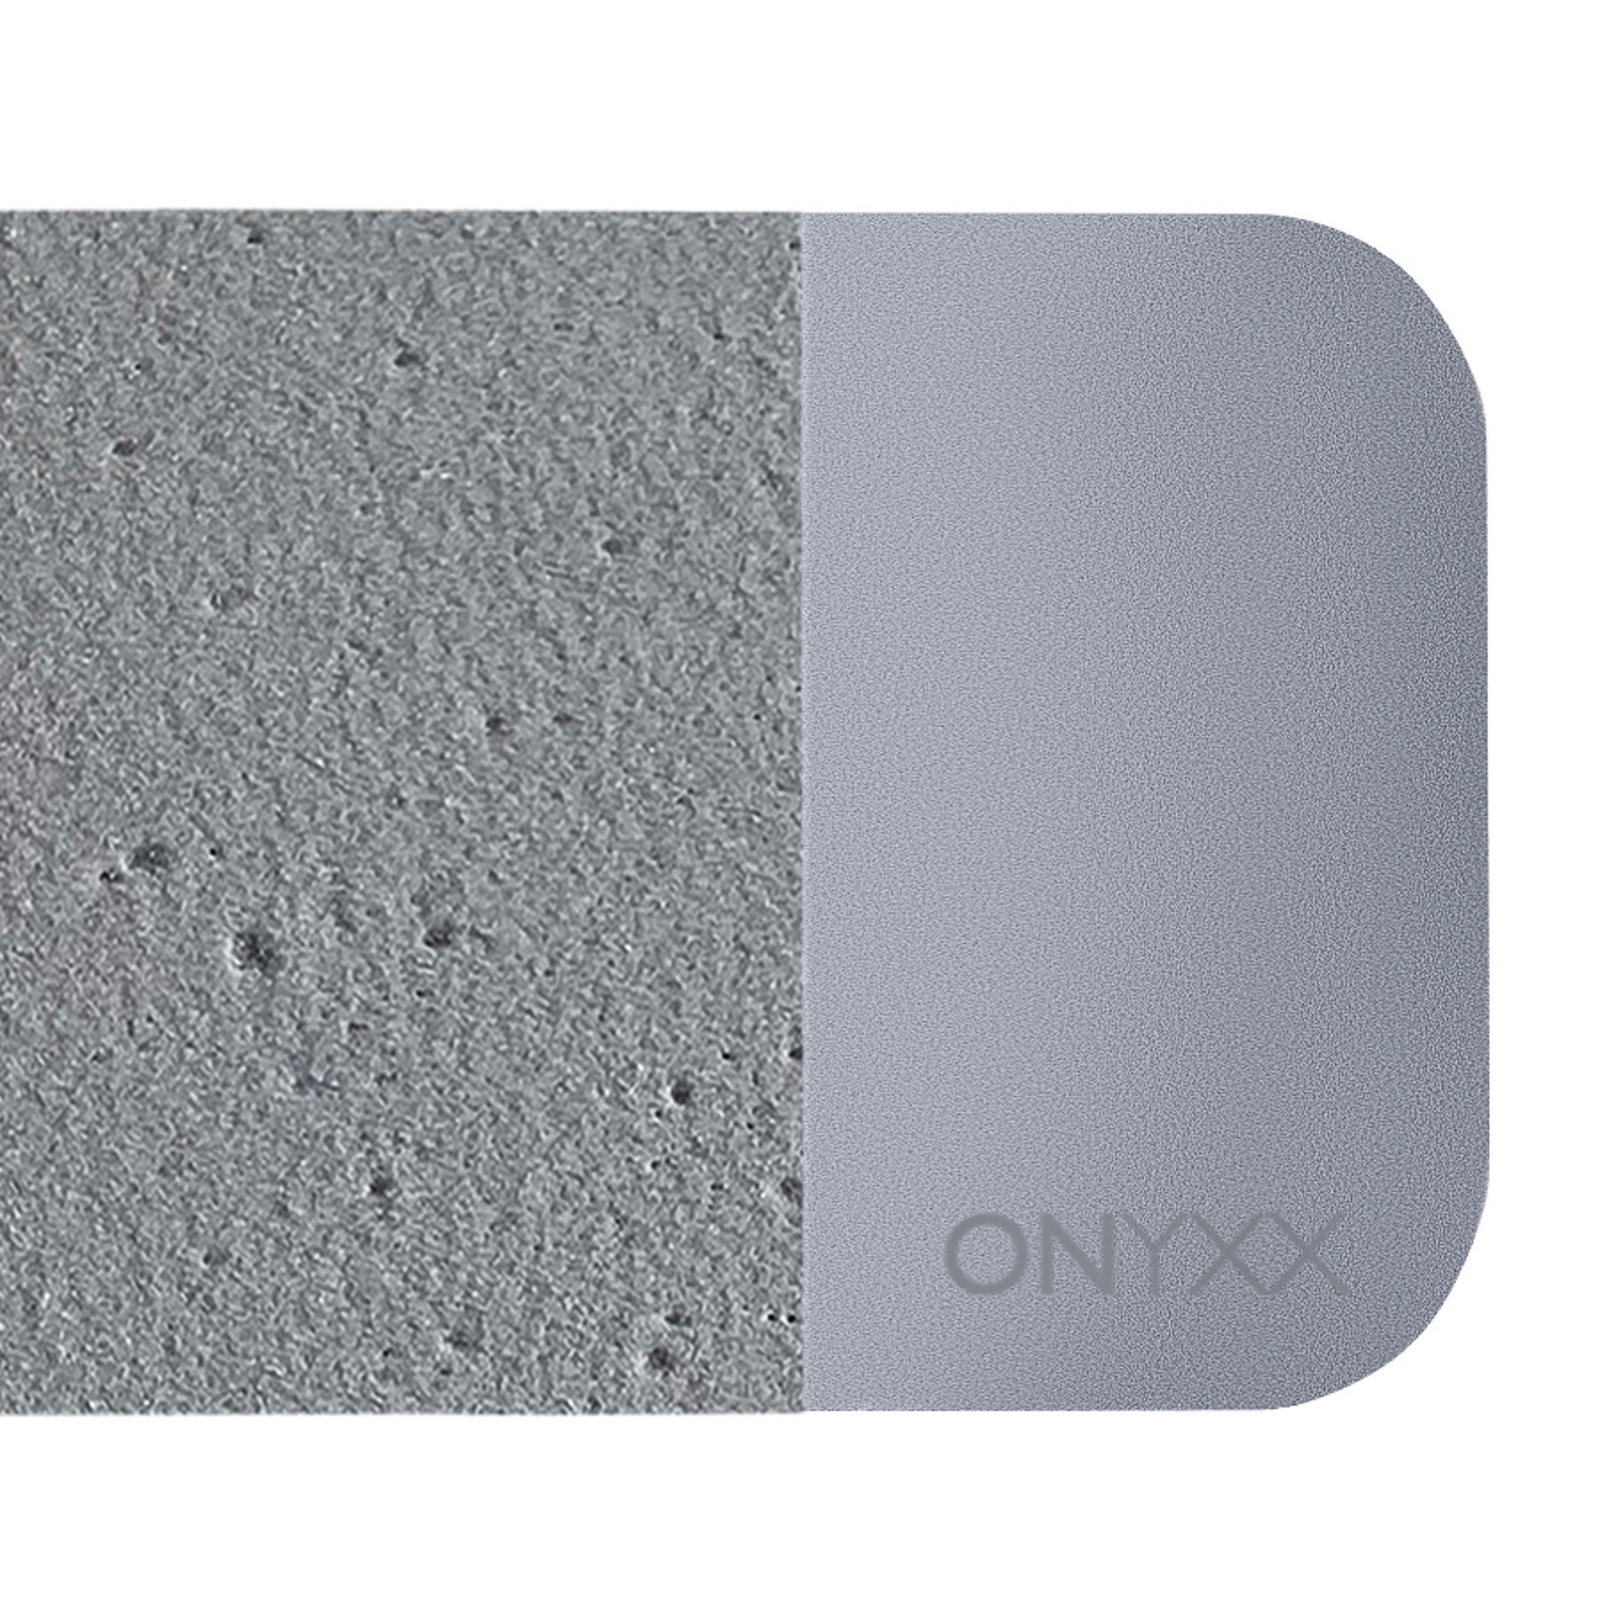 GRIMMEISEN Onyxx Linea Pro Pendel Beton/silber